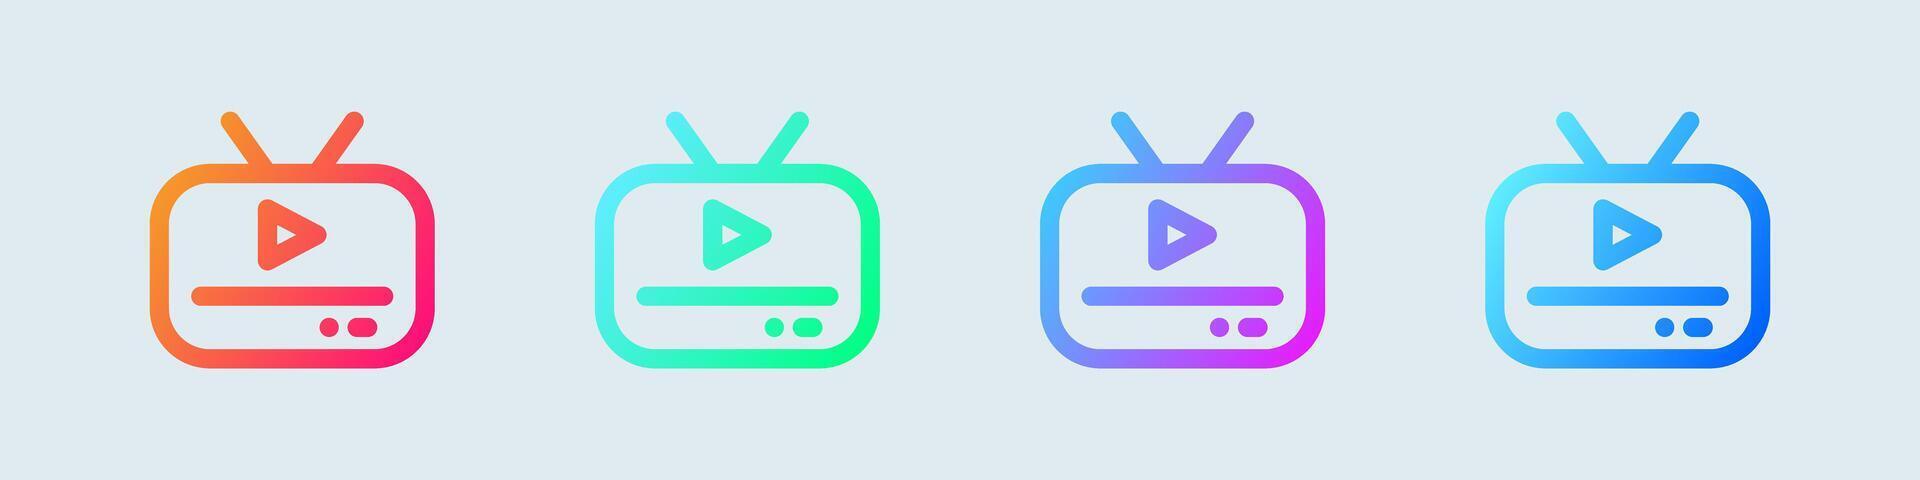 TV linje ikon i lutning färger. tv tecken vektor illustration.